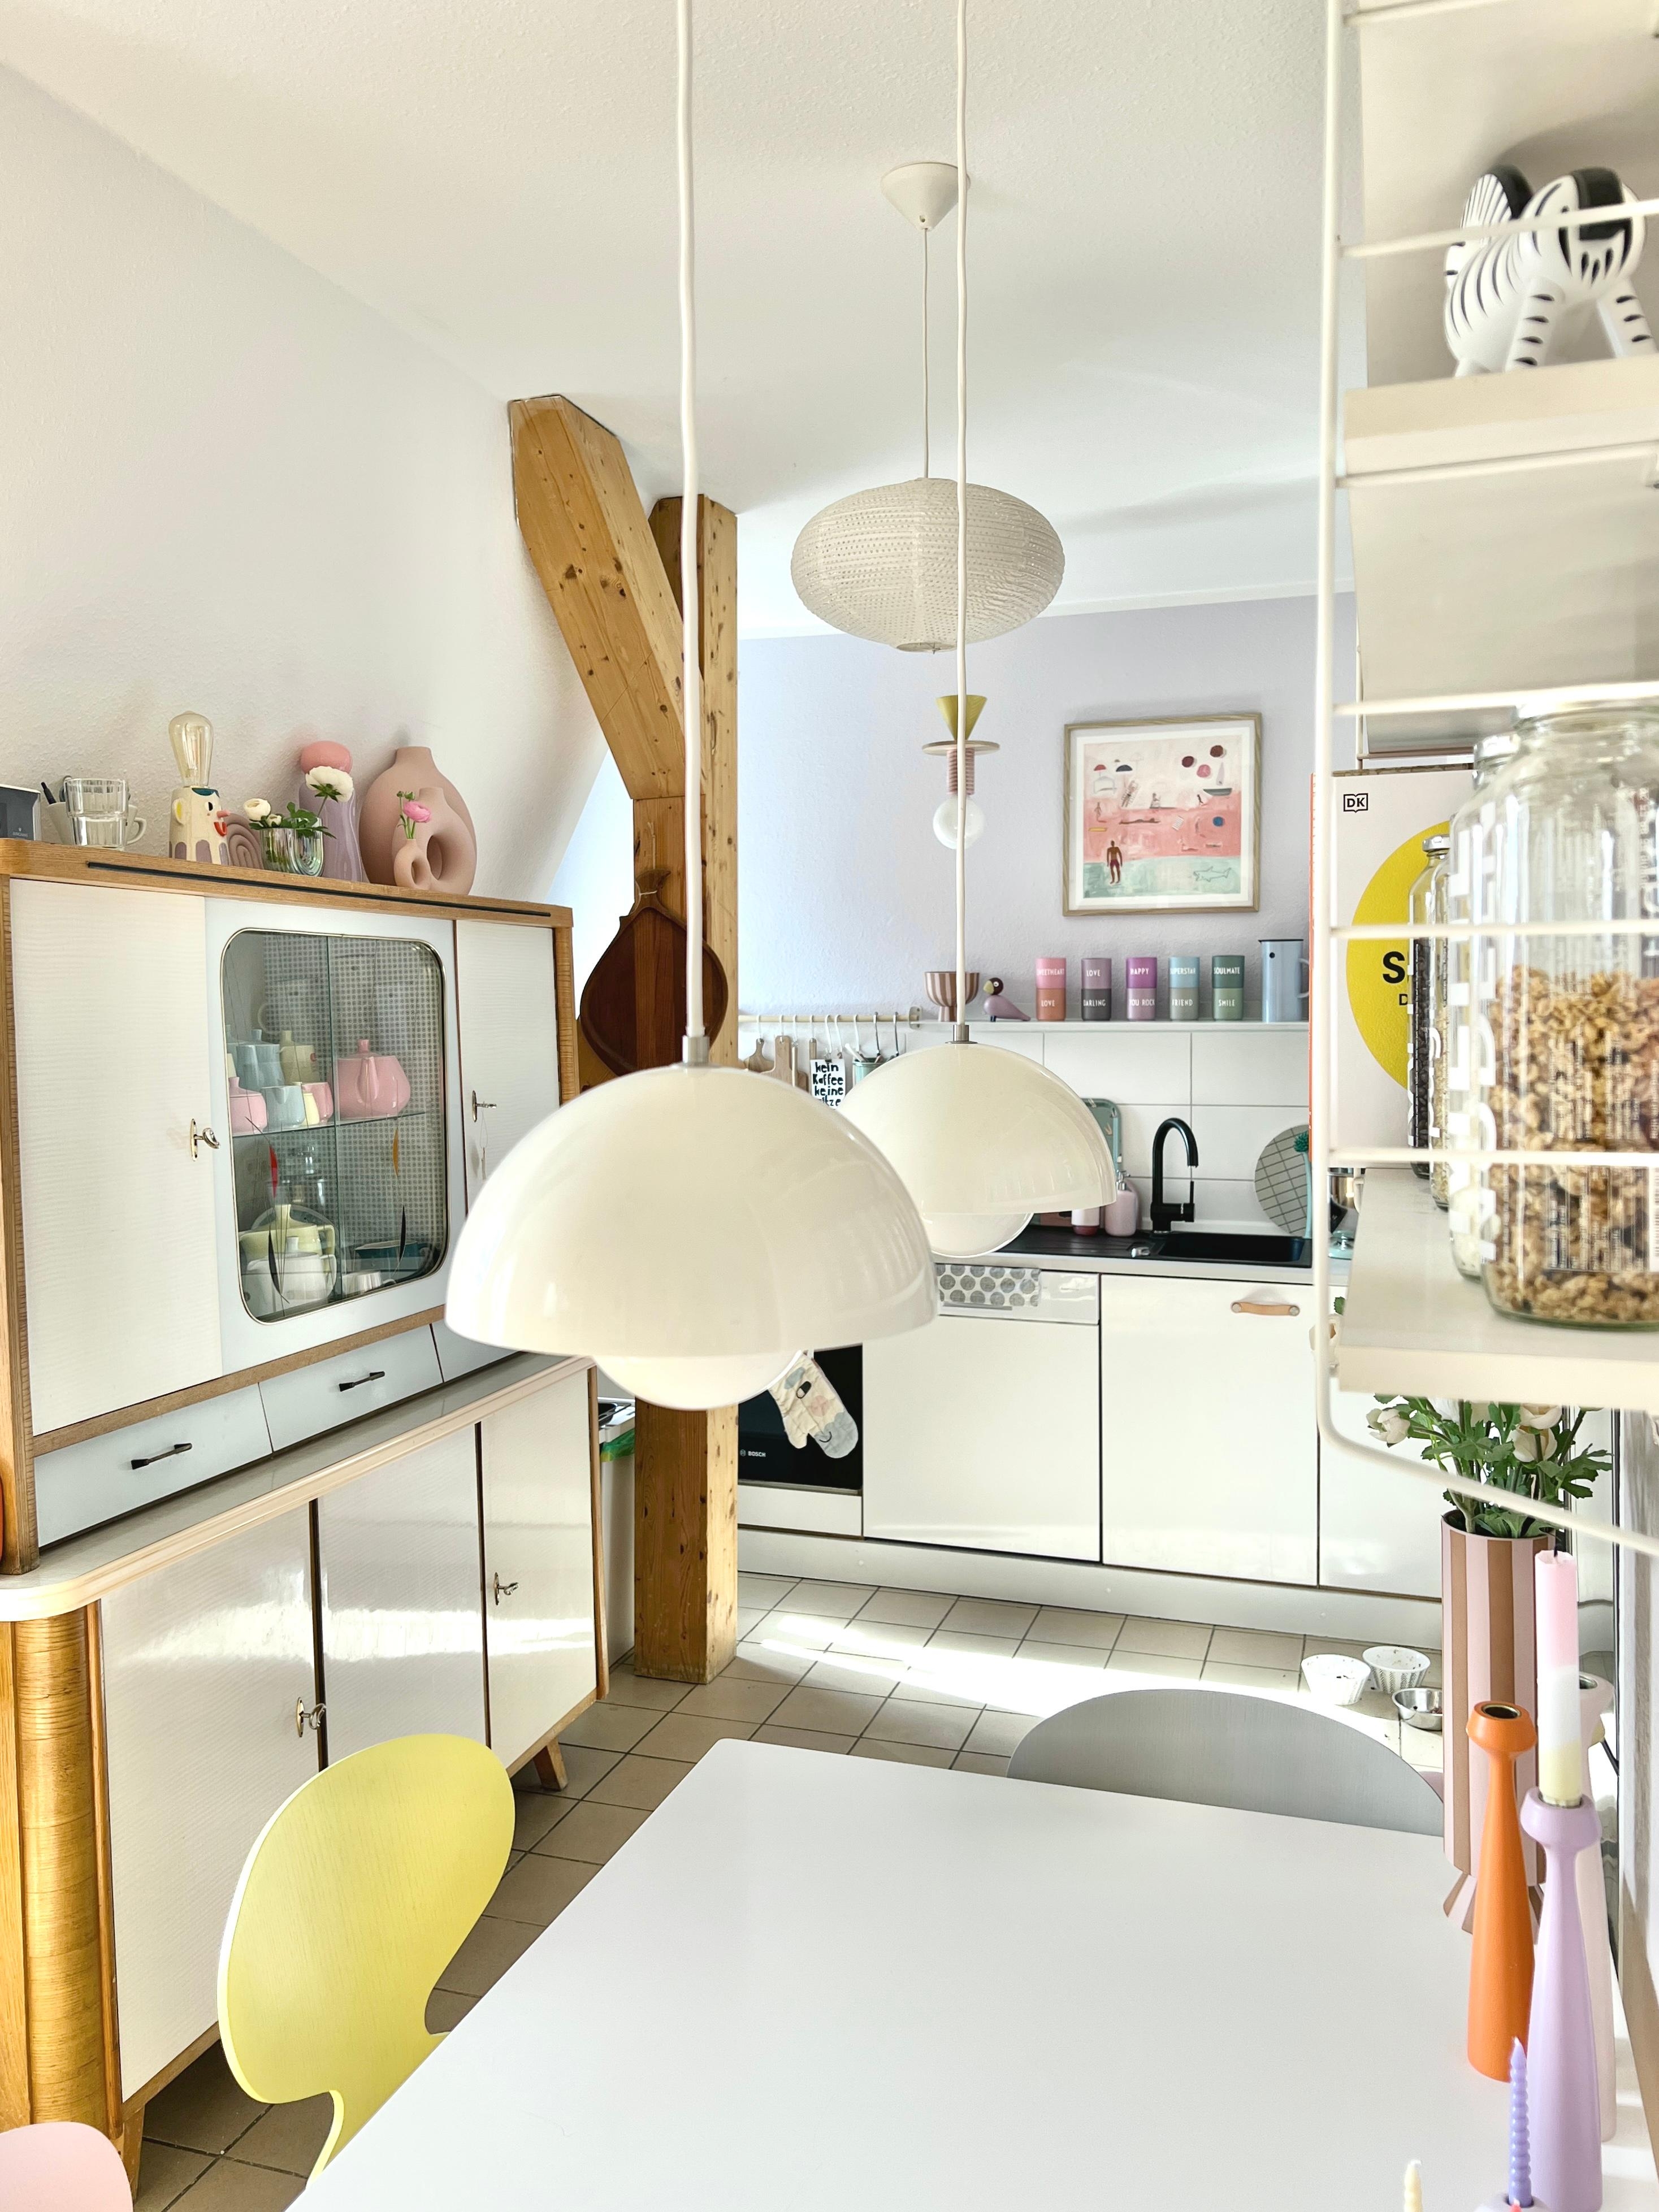 #interior #interiordesign #couchliebt #küche #pastell #küchenzeile #flowerpot #buffetschrank #50er #60er #vintage 